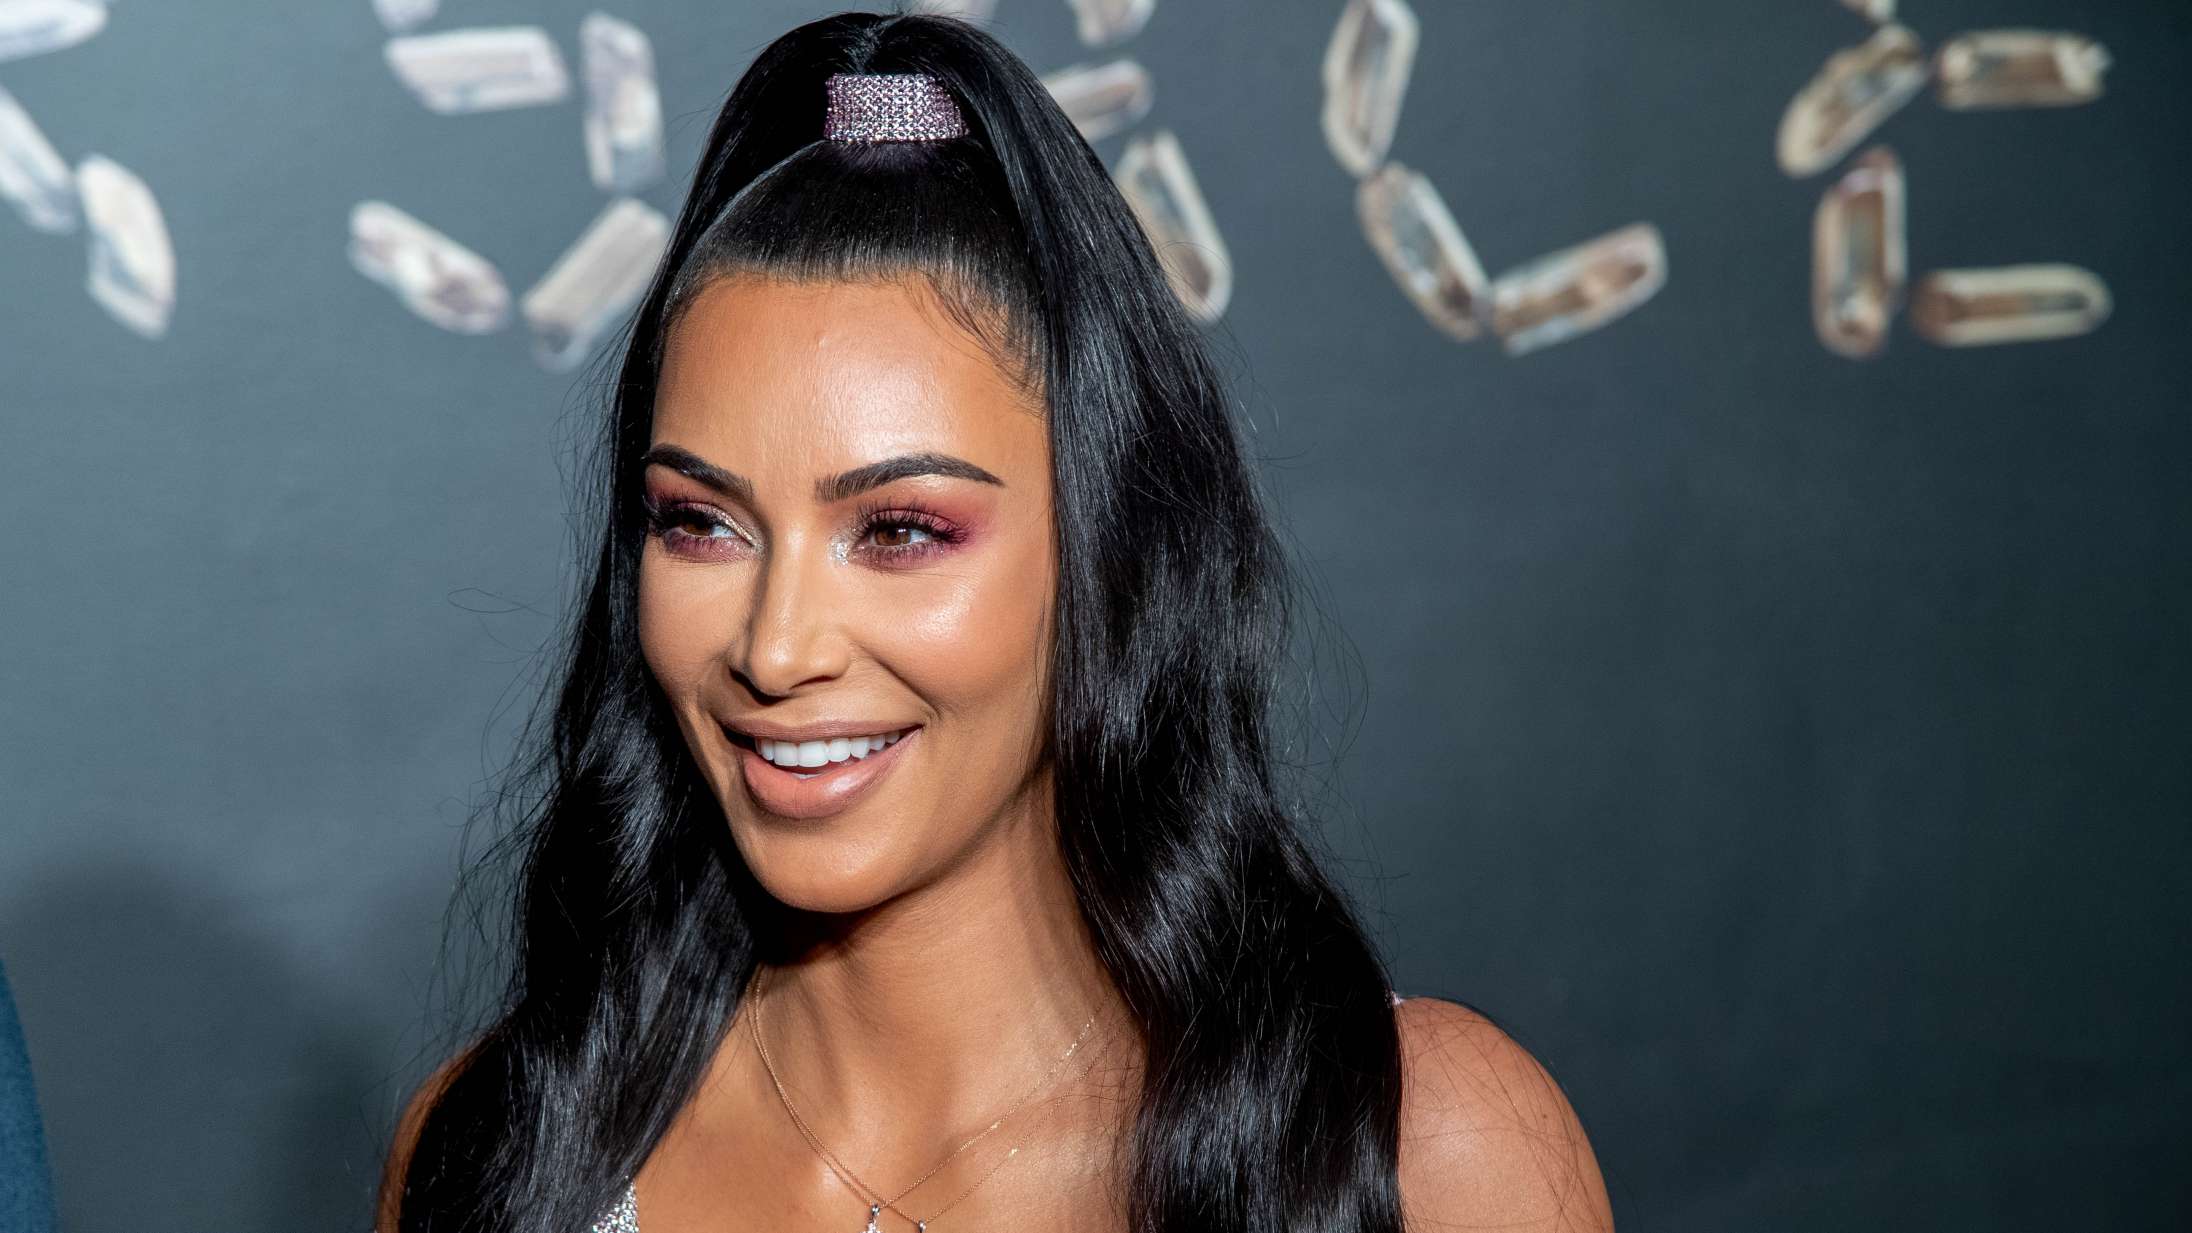 Kim Kardashian går til modangreb på Kanye West i Instagram-kommentar